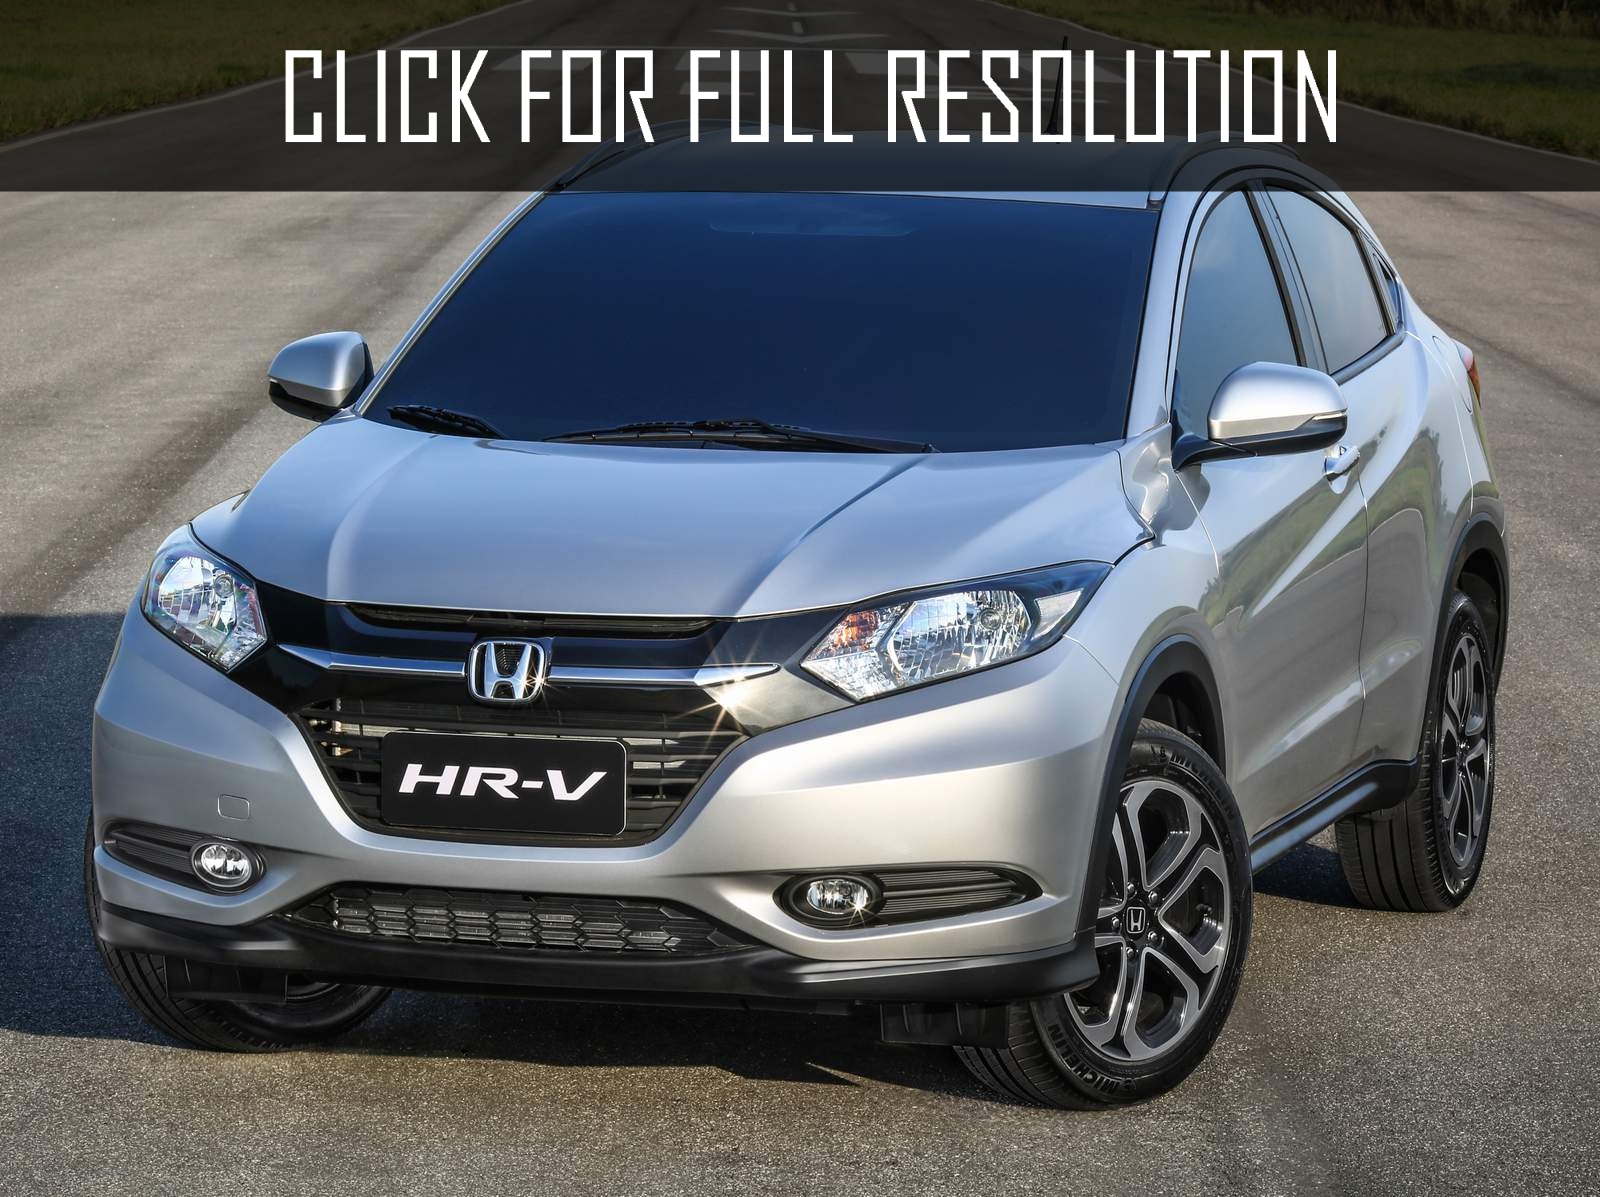 Honda HR-V Suv